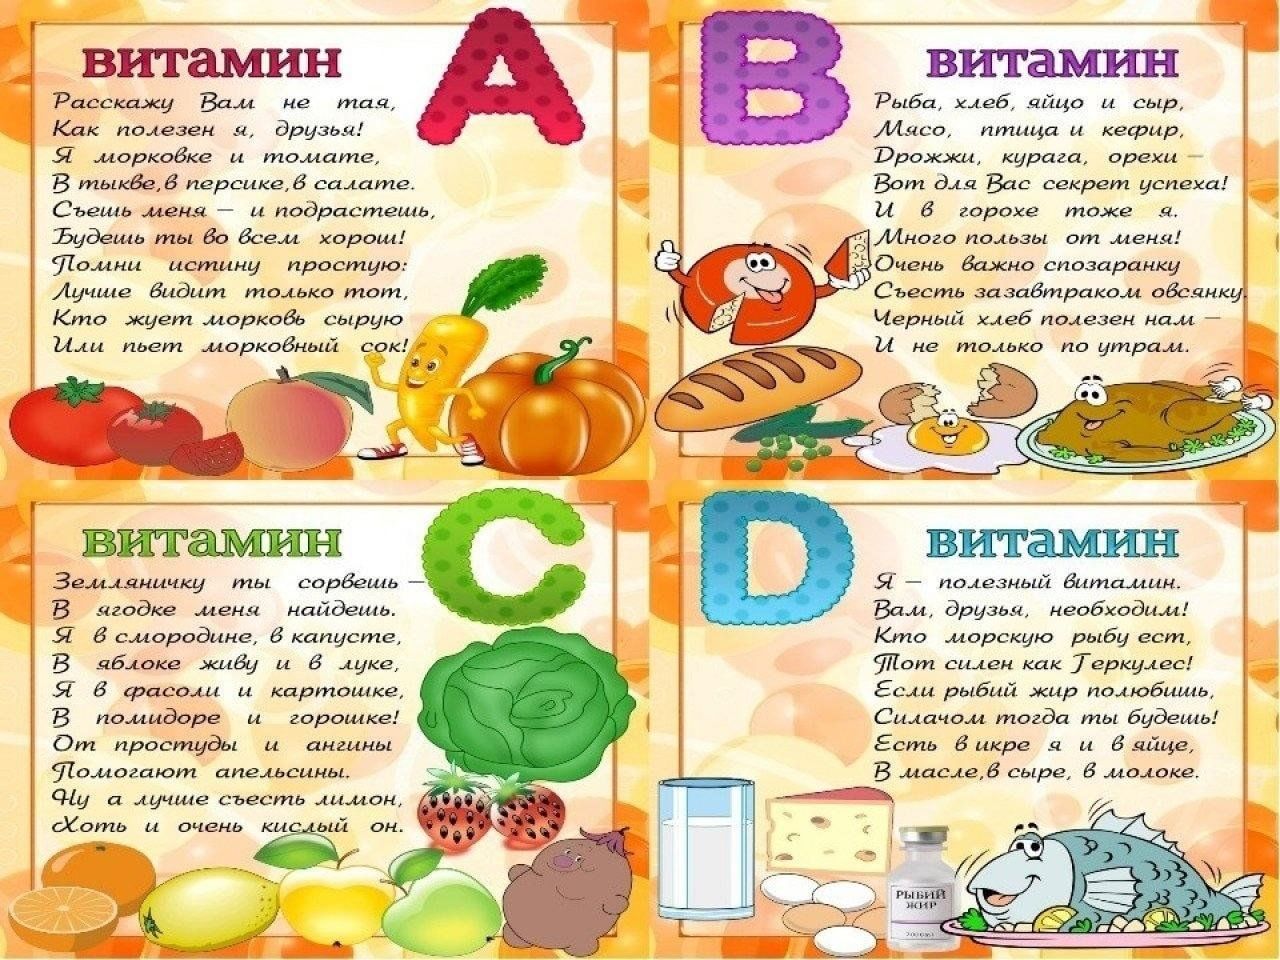 Фрукты и их витамины. Витамины для детей. Тема витамины для детей. Плакат витамины. Витамины в овощах и фруктах для детей.